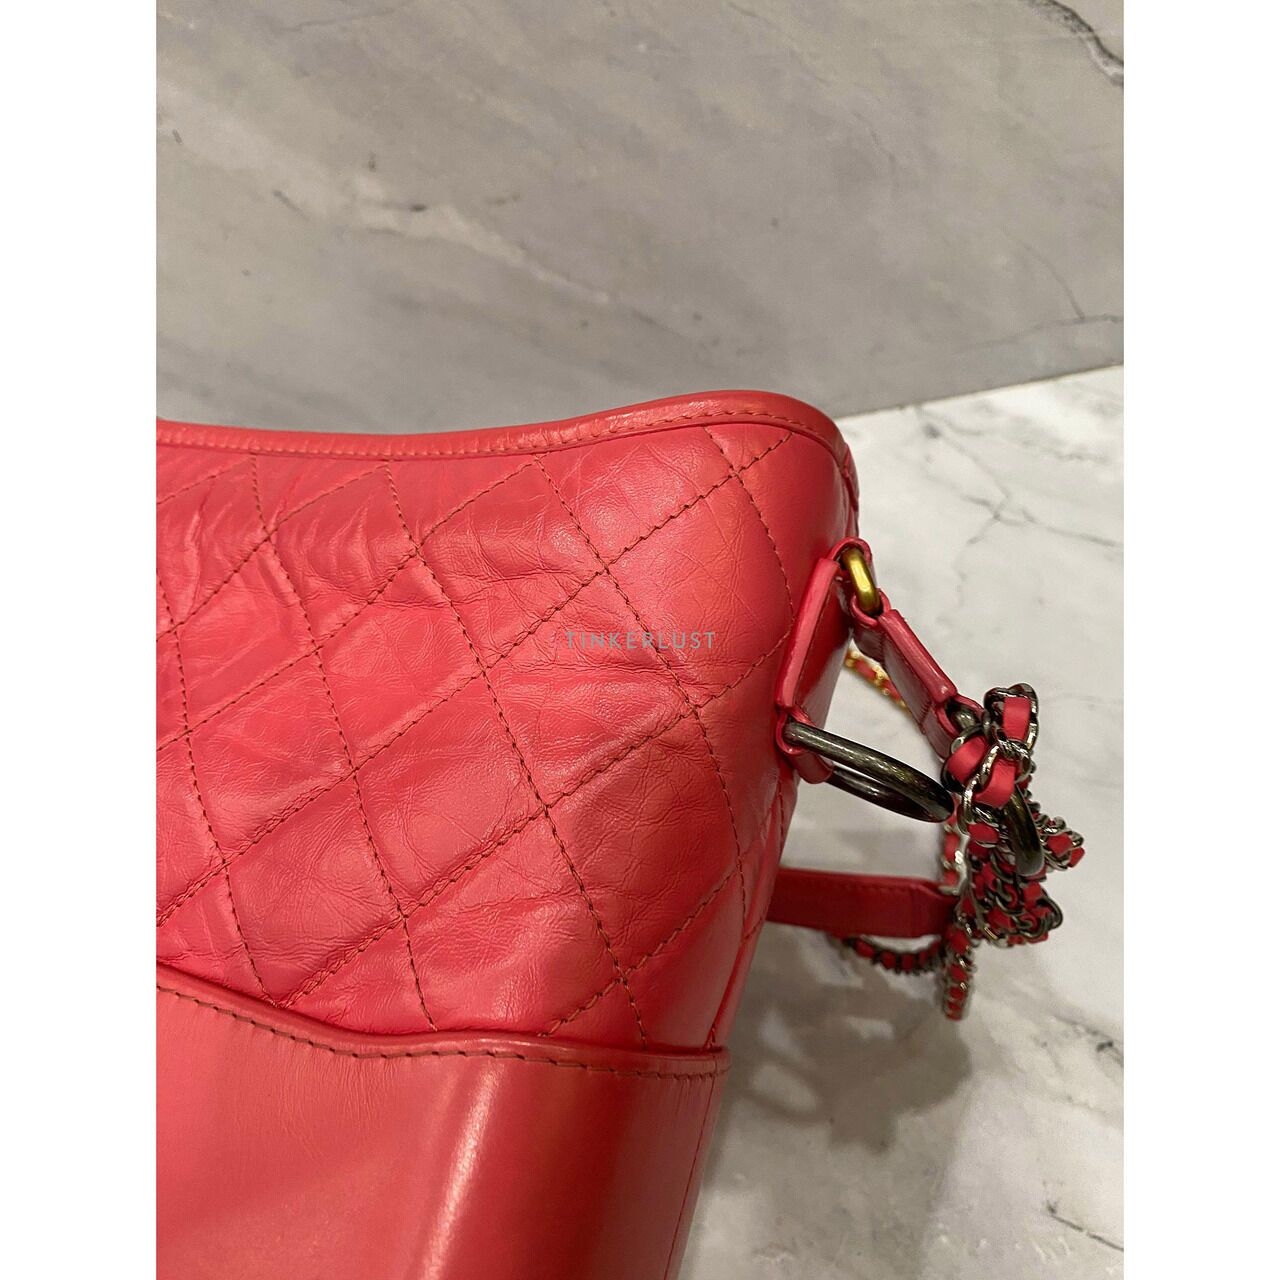 Chanel Gabrielle Medium Fuchsia #31 2021 Shoulder Bag